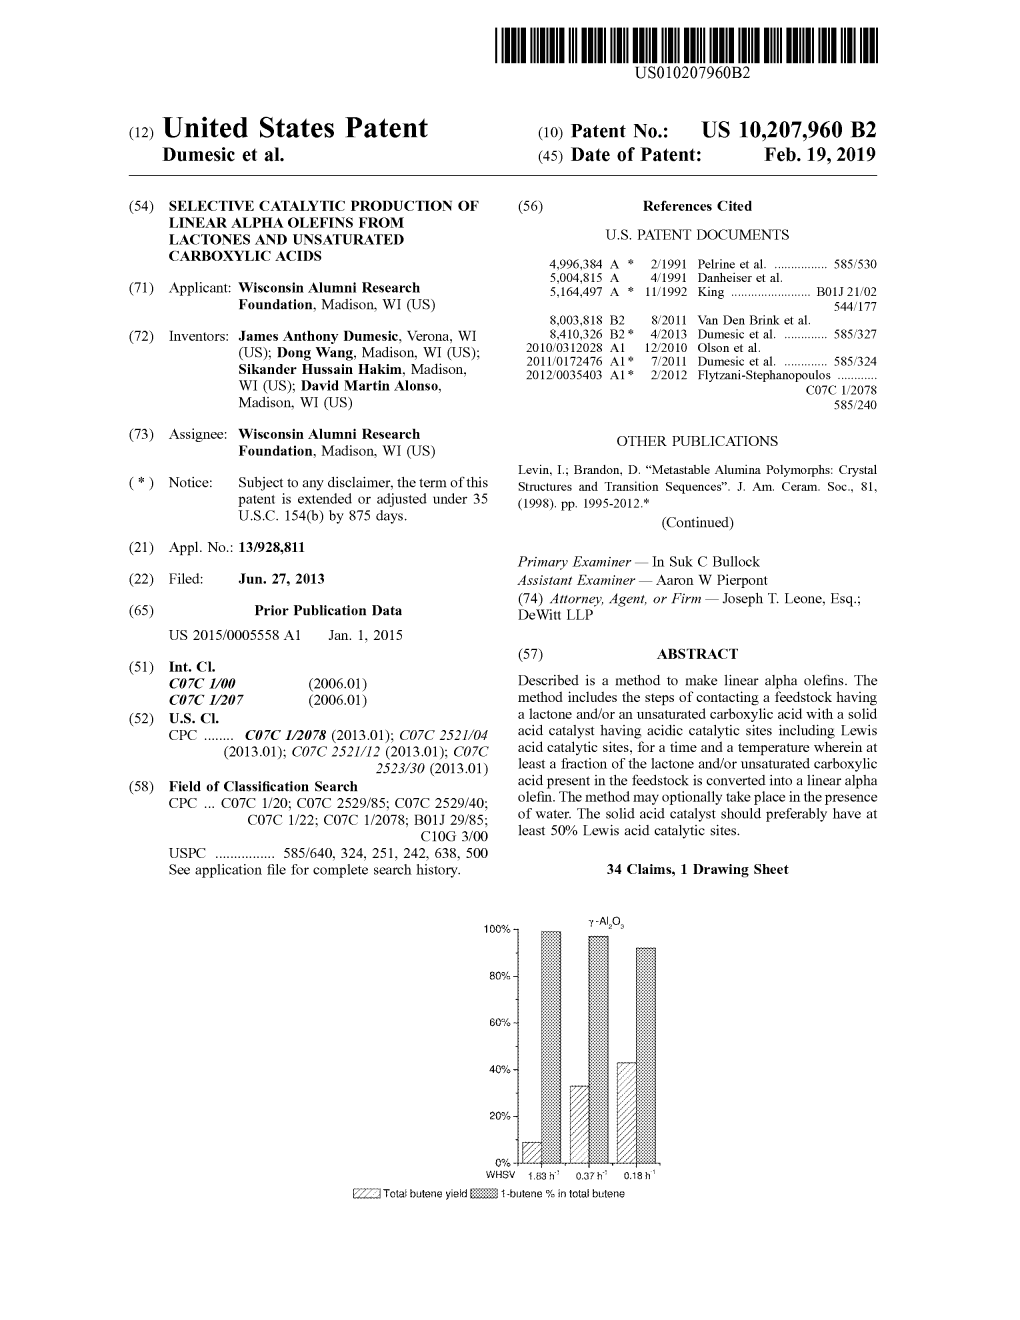 View U.S. Patent No. 10207960 in PDF